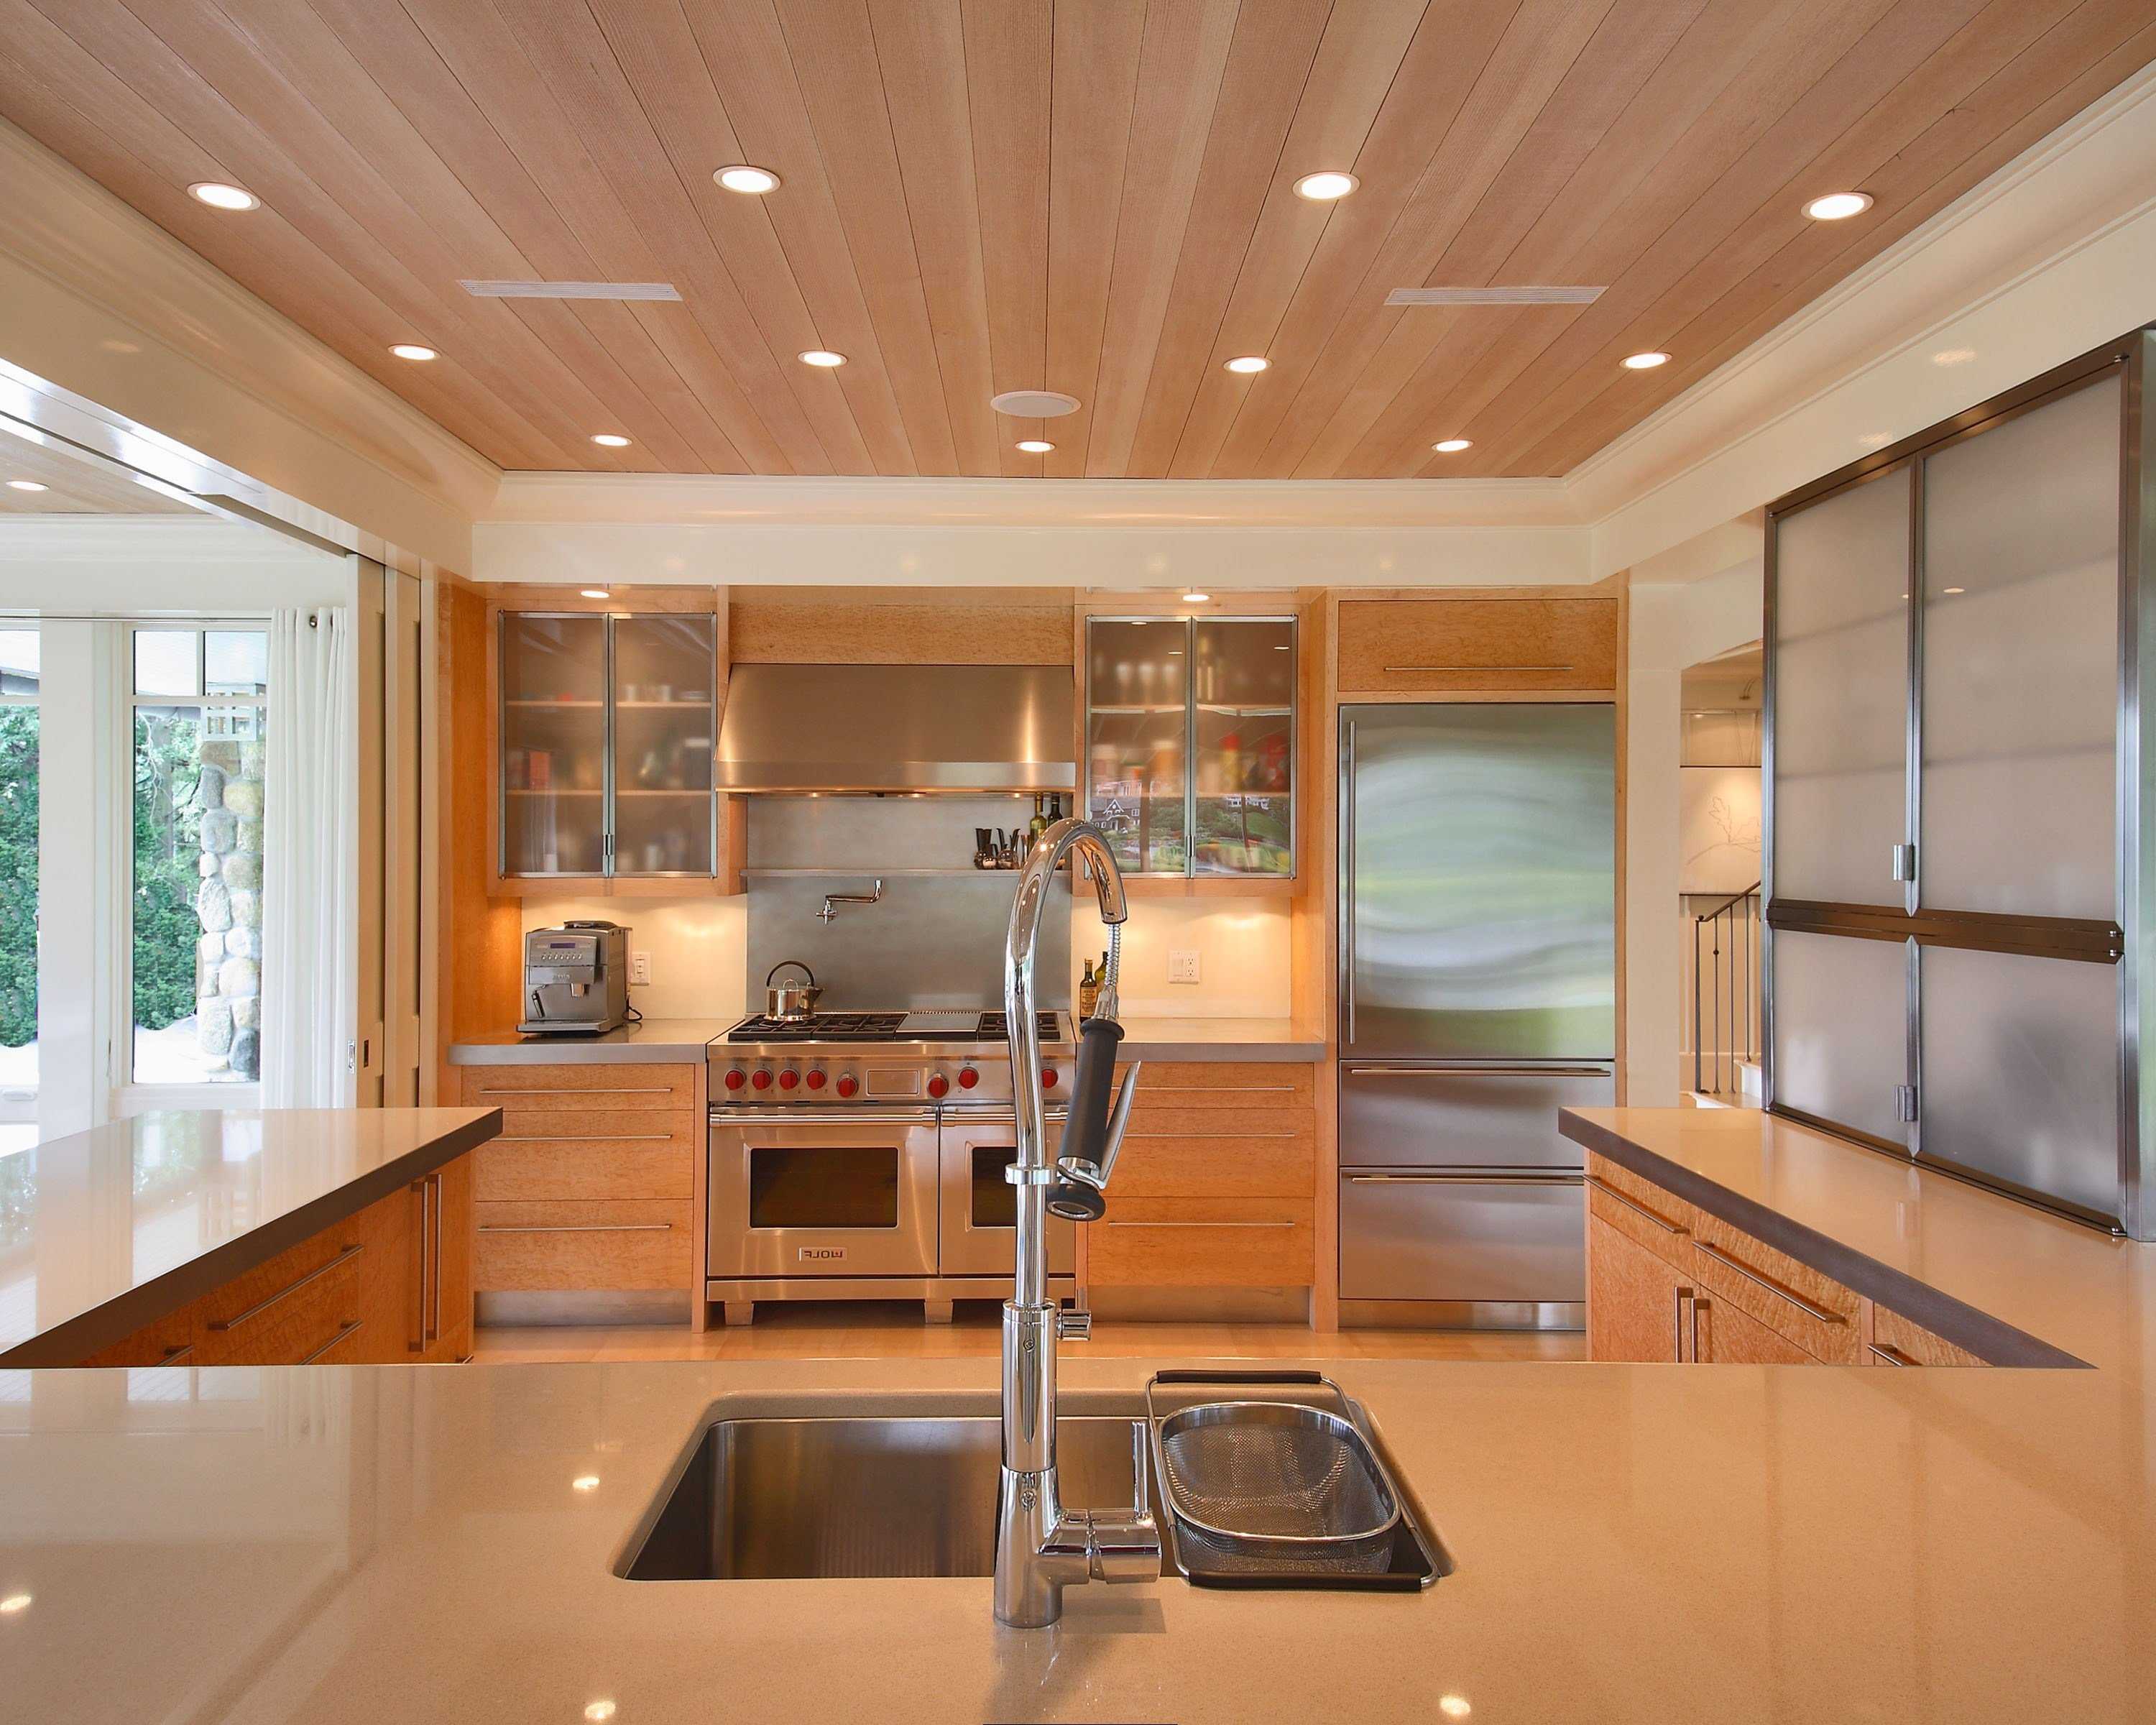 Решить какой потолок сделать на кухне непросто Приведем традиционные и не очень варианты с достоинствами и недостатками